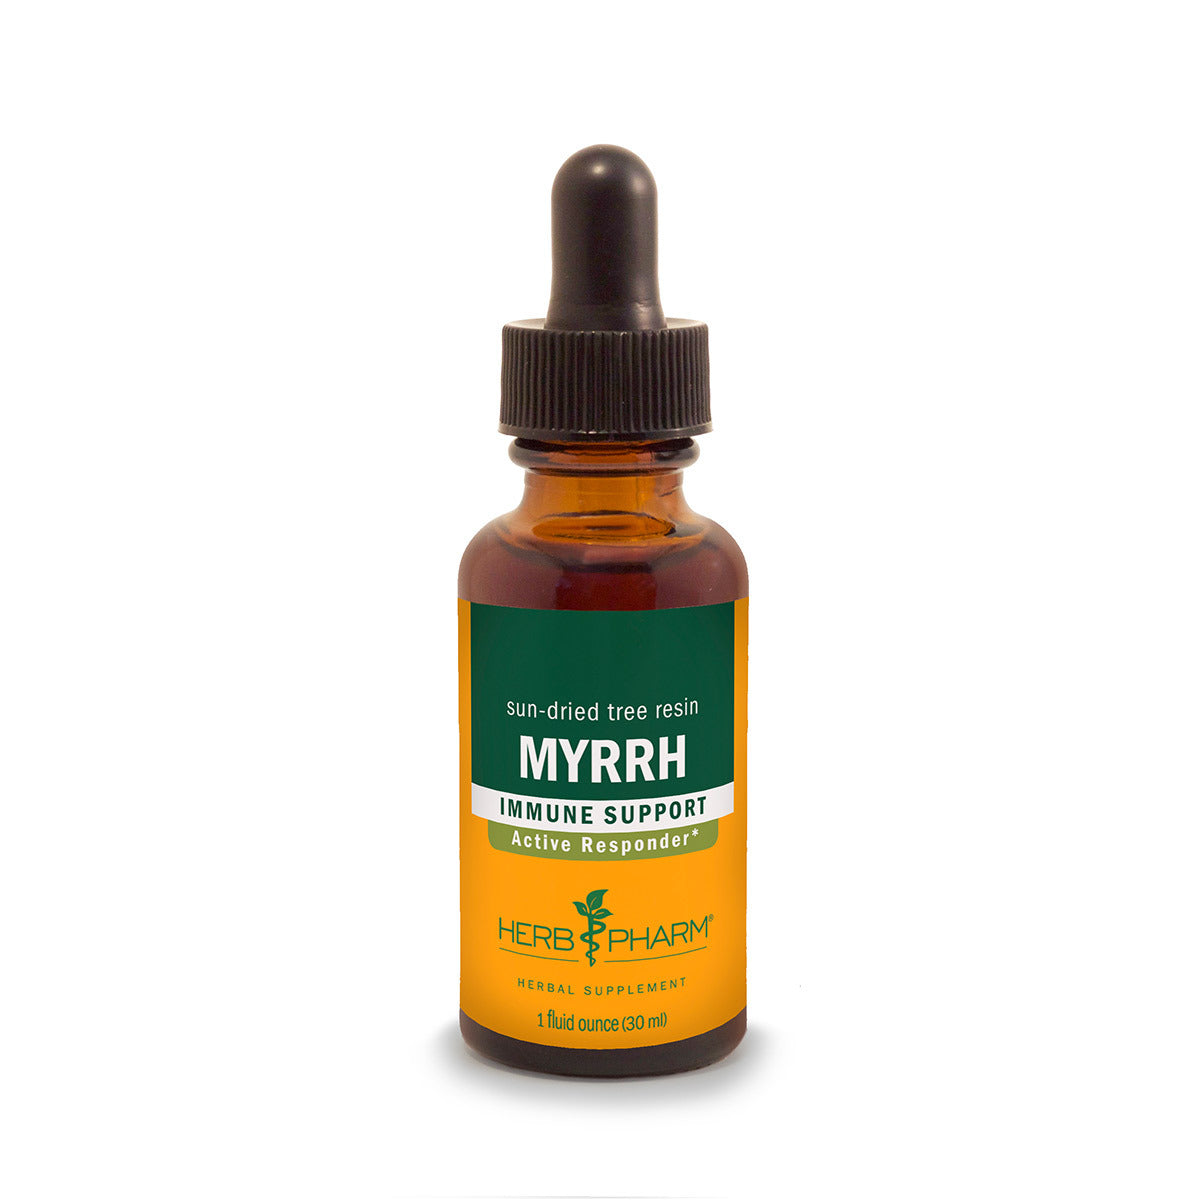 Primary image of Myrrh Extract